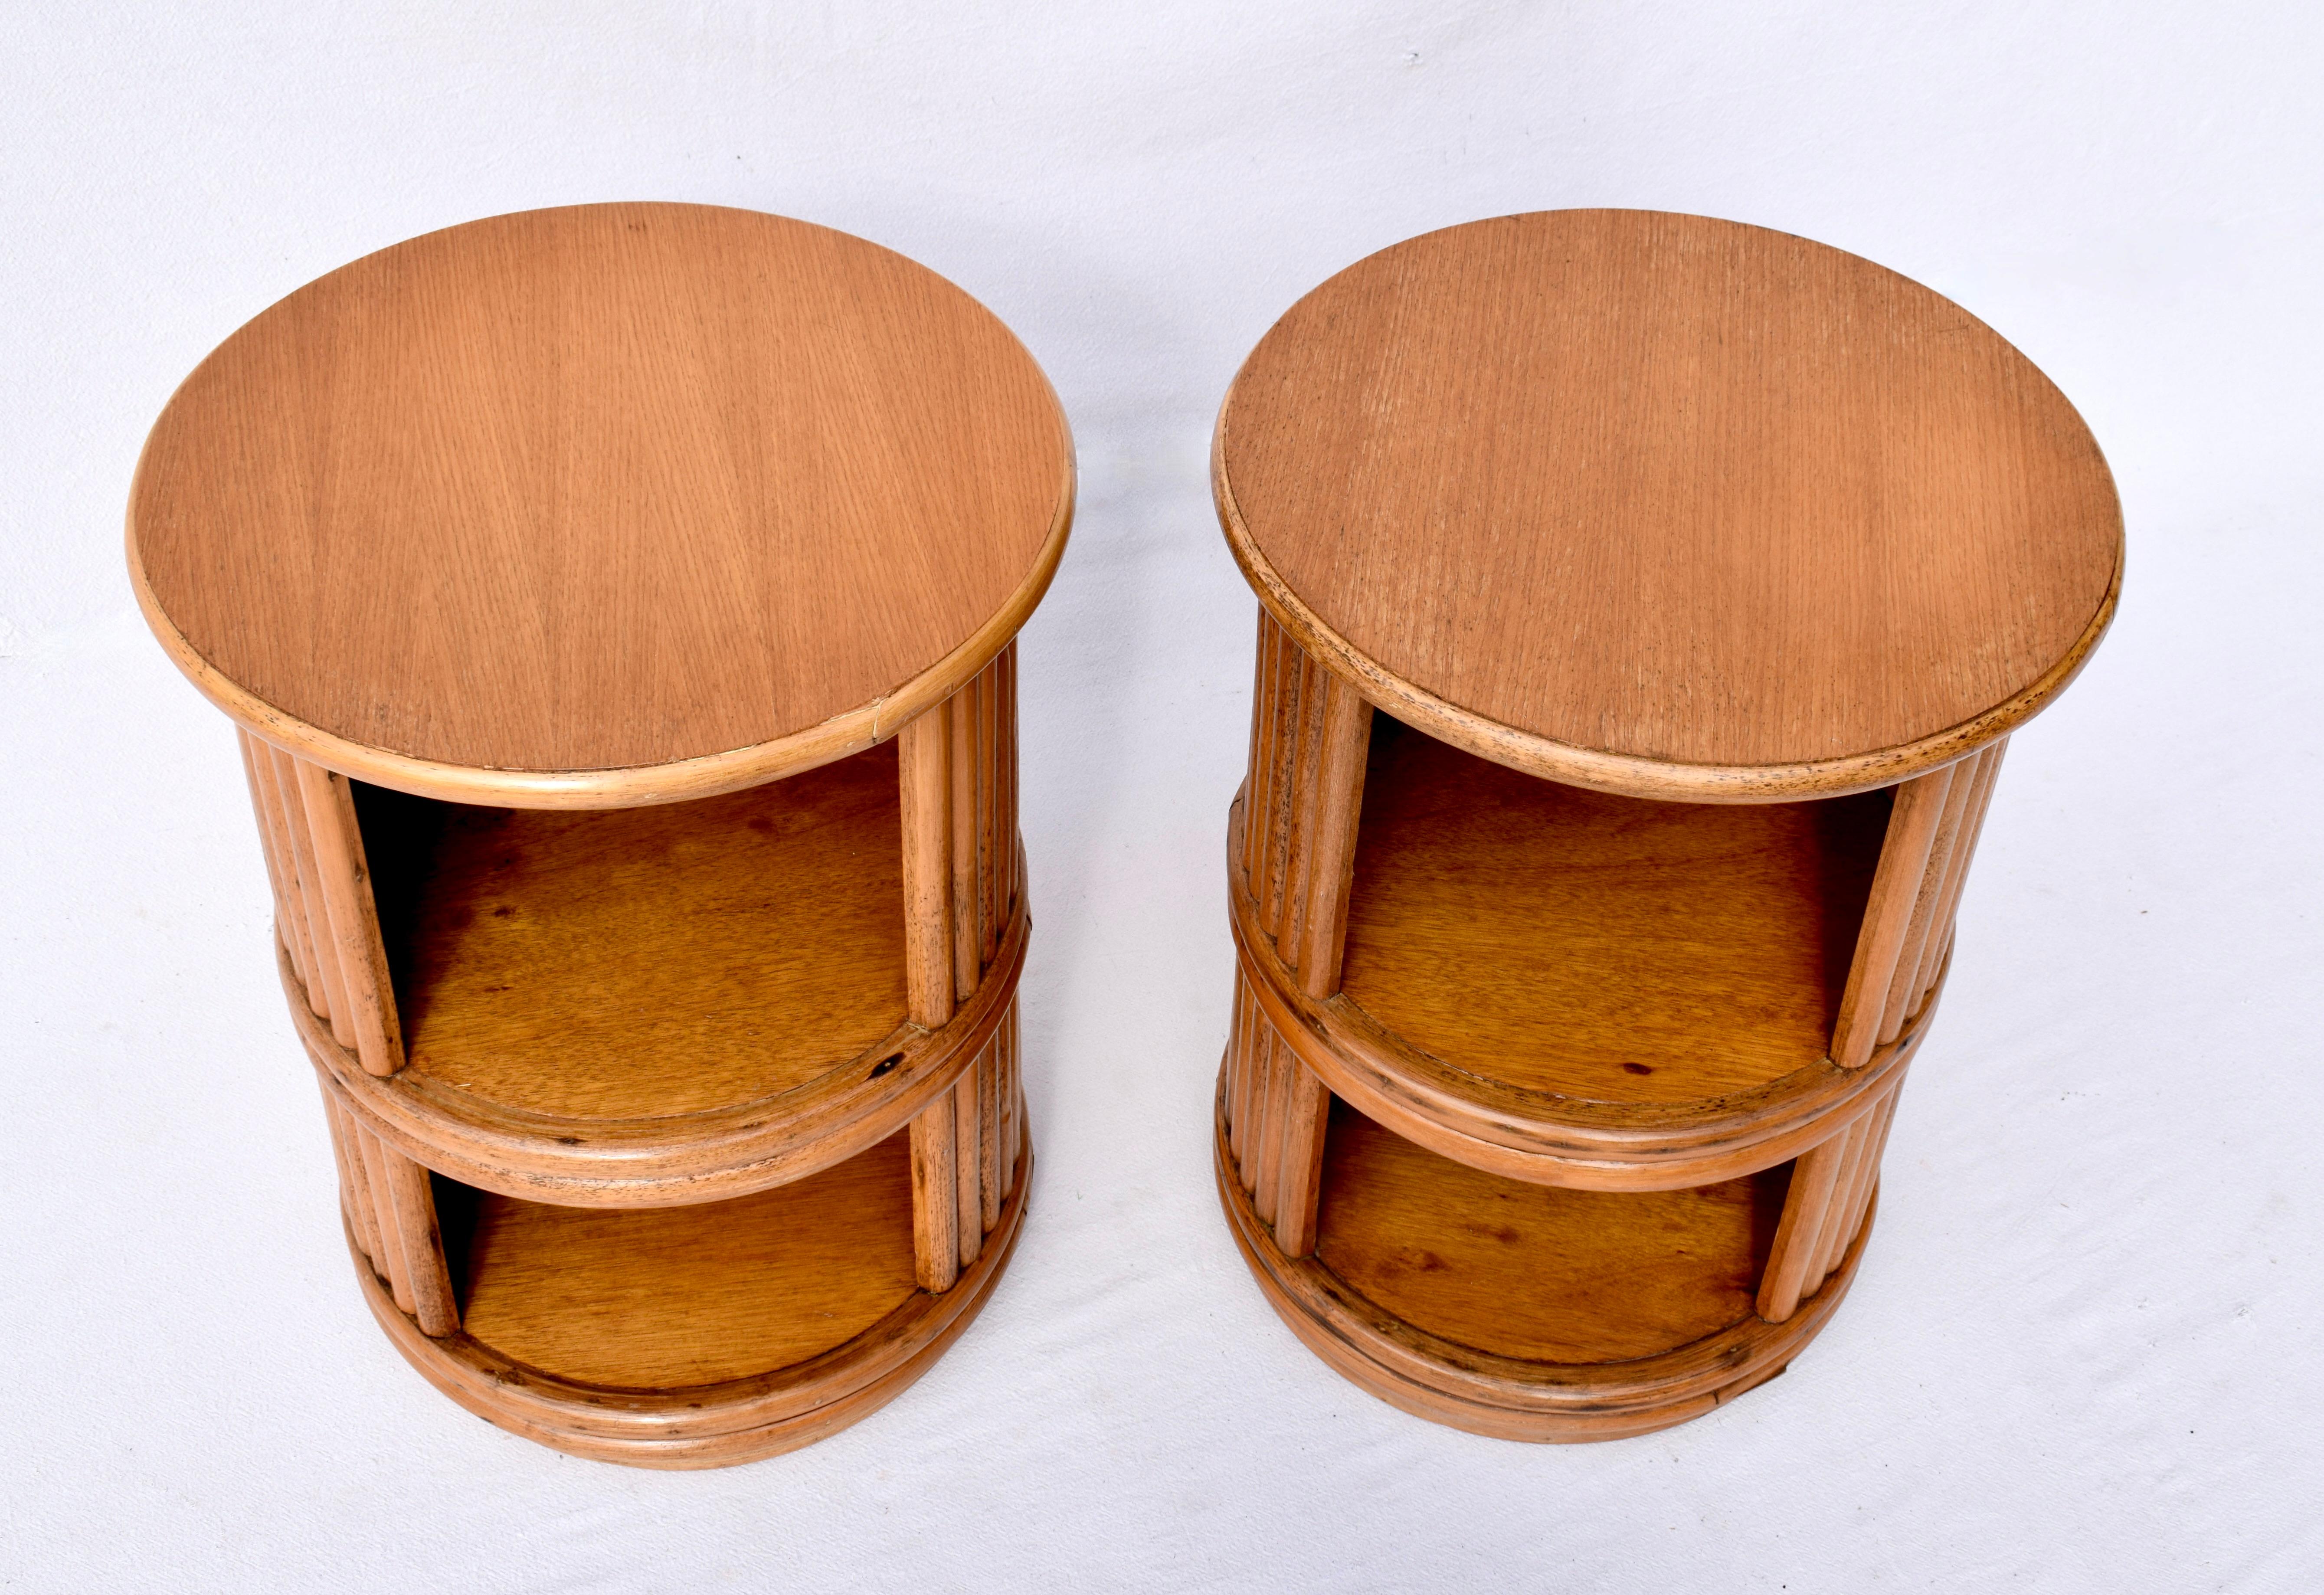 Paire de tables d'appoint pivotantes à deux niveaux en chêne et bambou des années 1960, fabriquées par Mcguire San Francisco. Les plateaux ont été remis à neuf et les étiquettes en laiton de Mcguire sont d'origine.